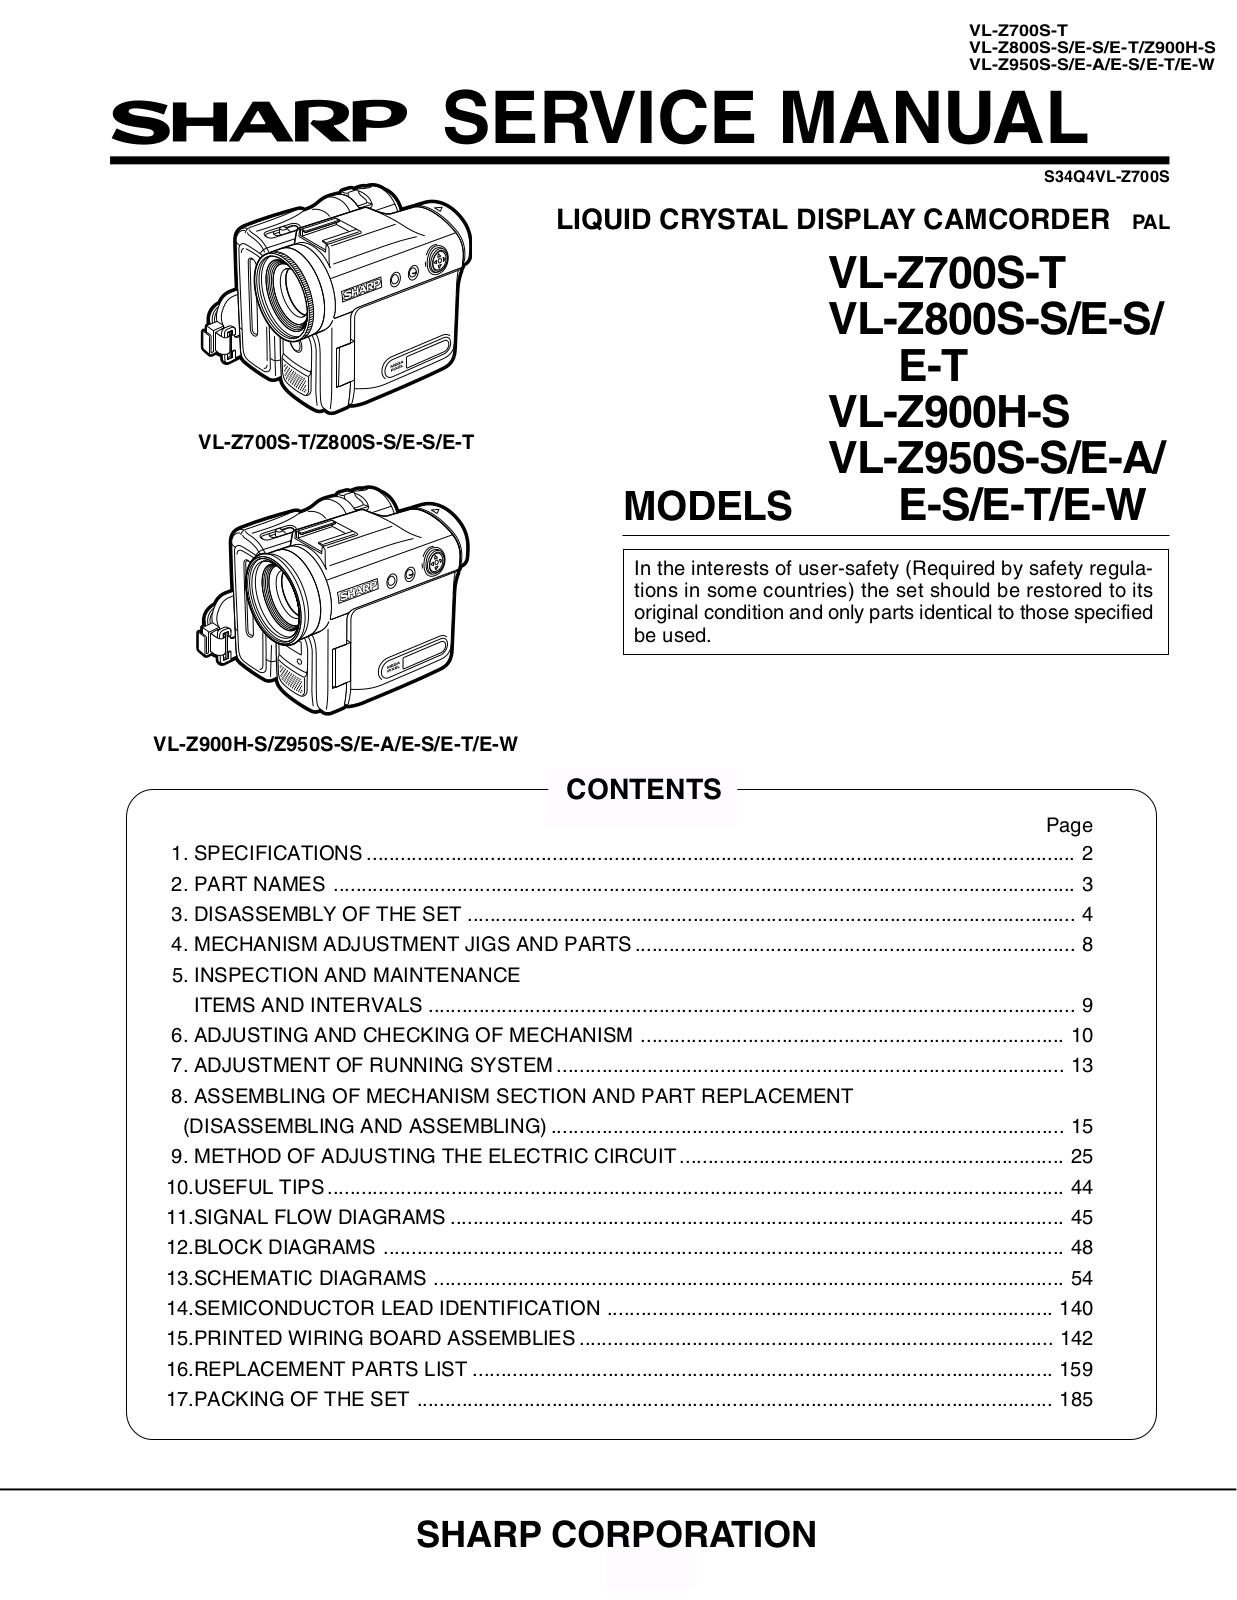 SHARP VL-Z700, VL-Z700S-T, VL-Z800S, VL-Z900, VL-Z950S Service Manual